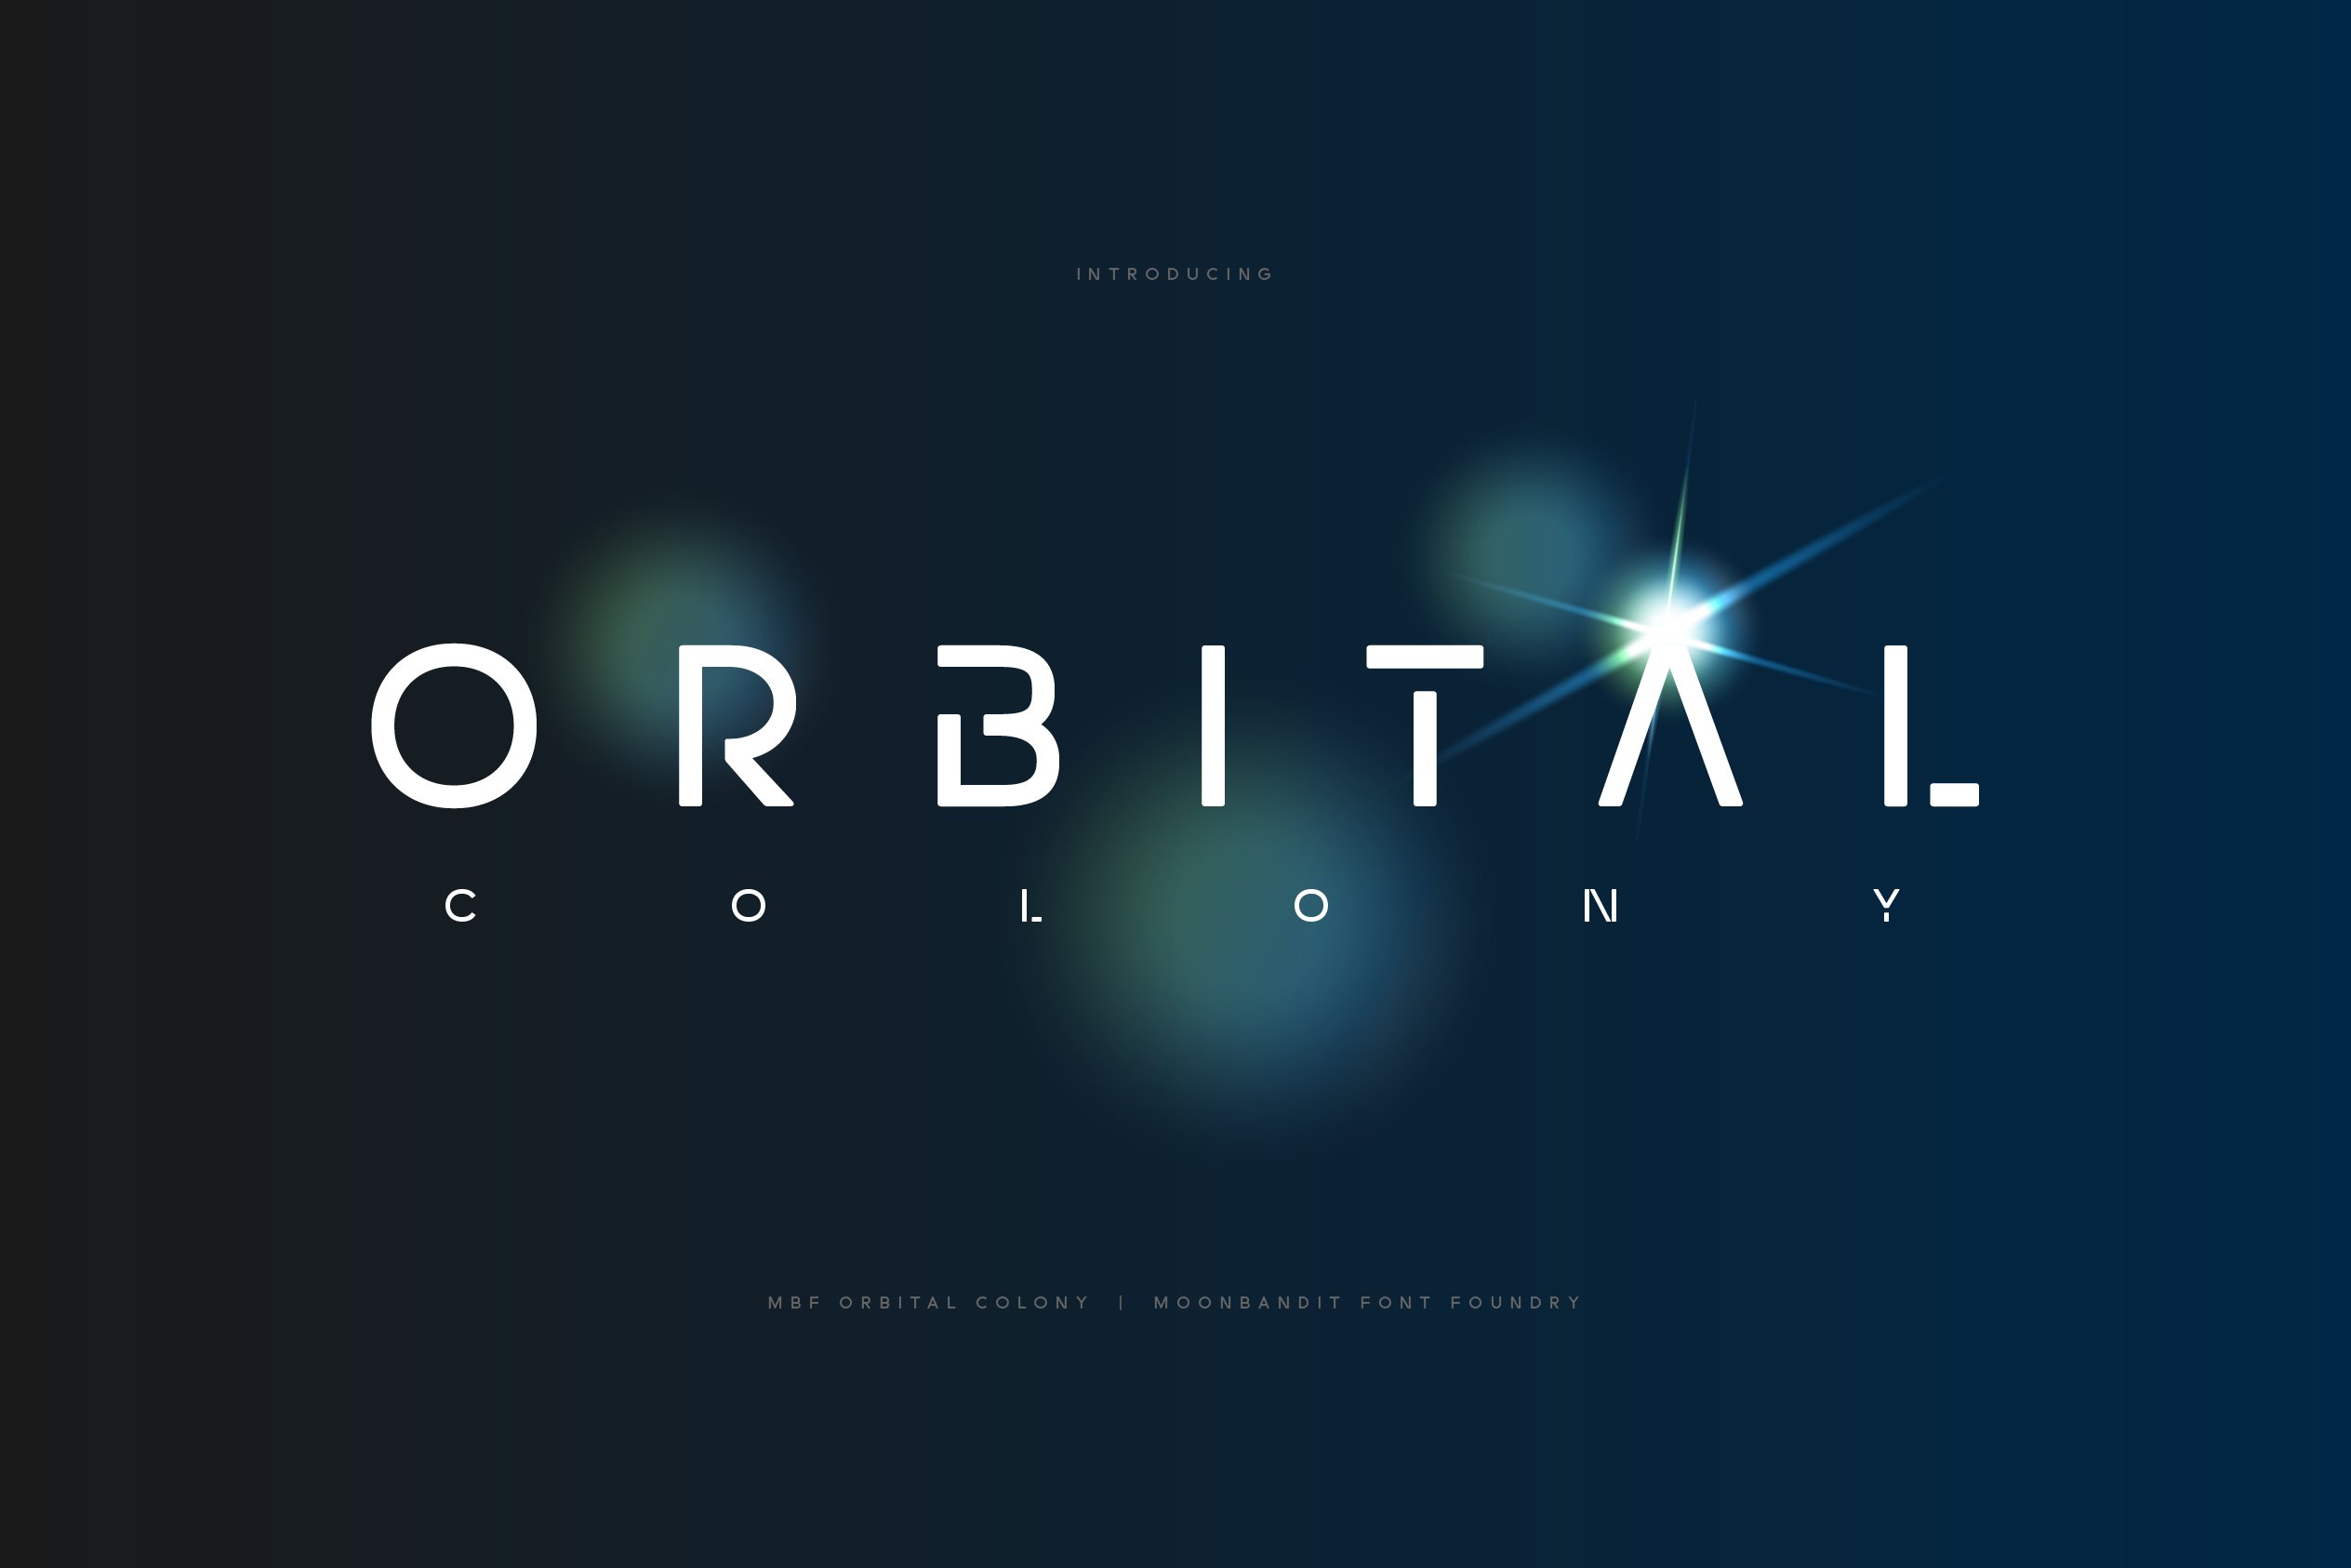 MBF Orbital Colony - Futuristic font cover image.